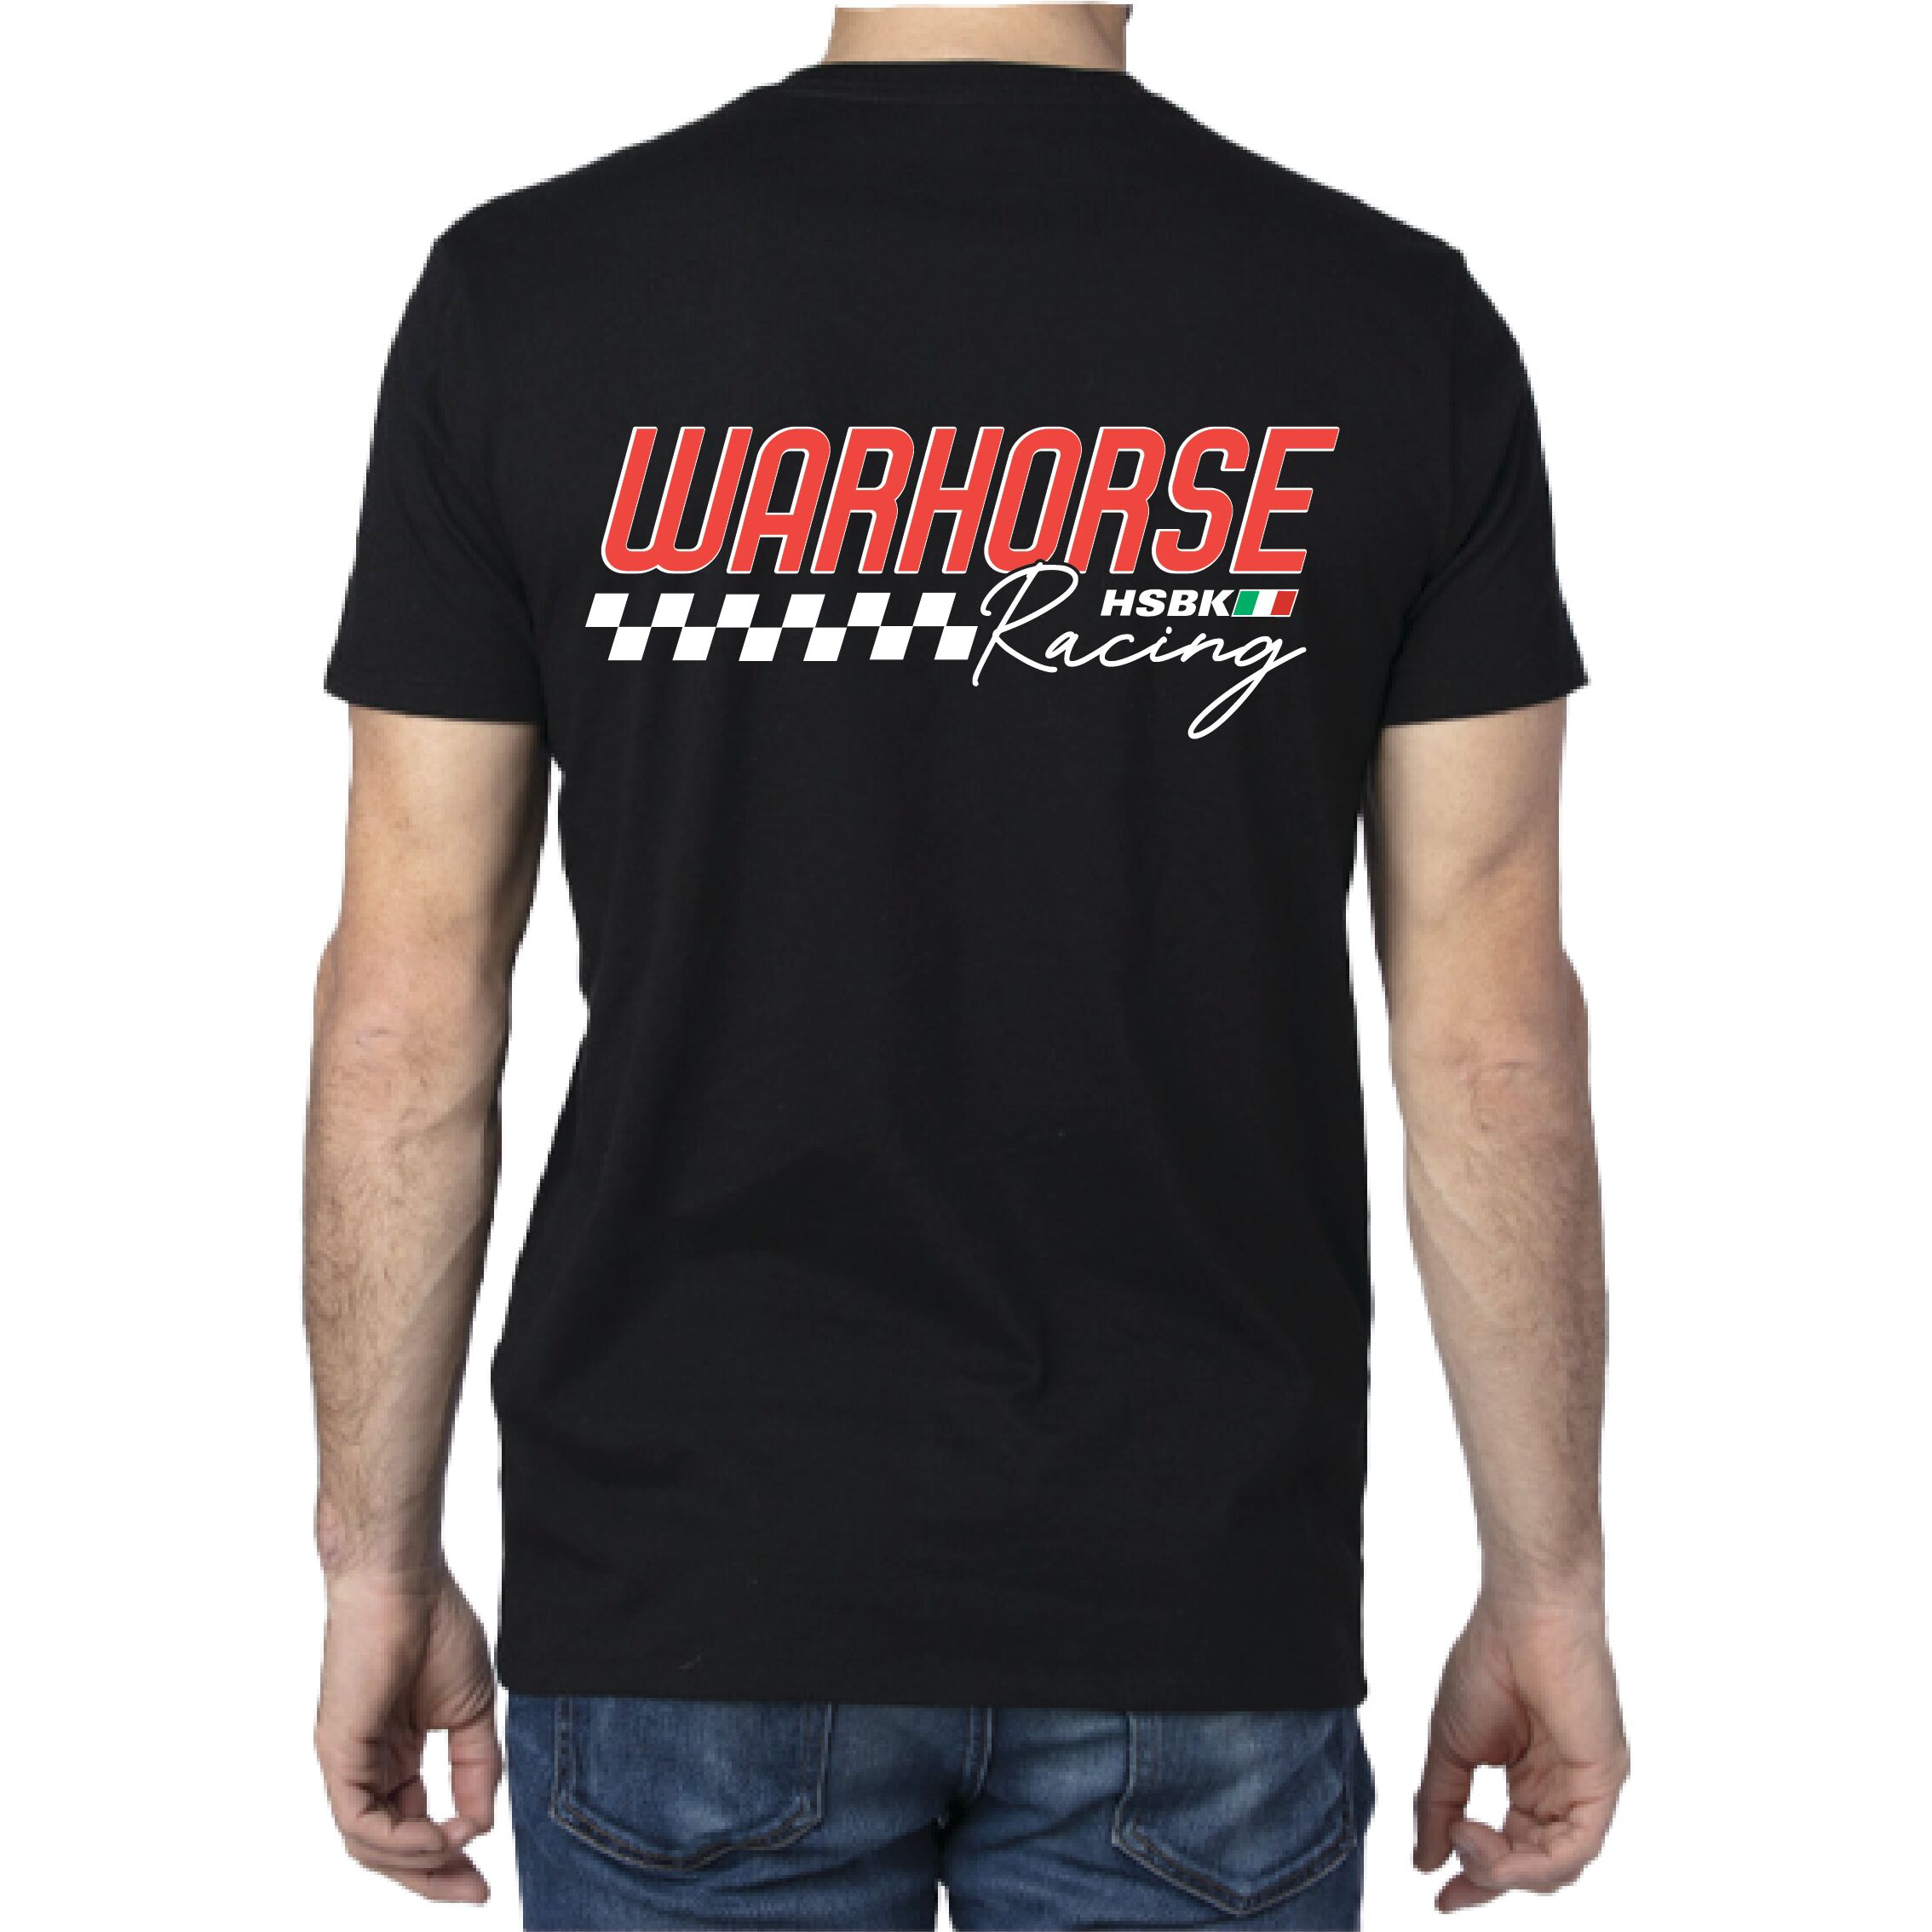 Apparel & Gear :: Warhorse HSBK :: Warhorse Racing Finish Line T-Shirt ...